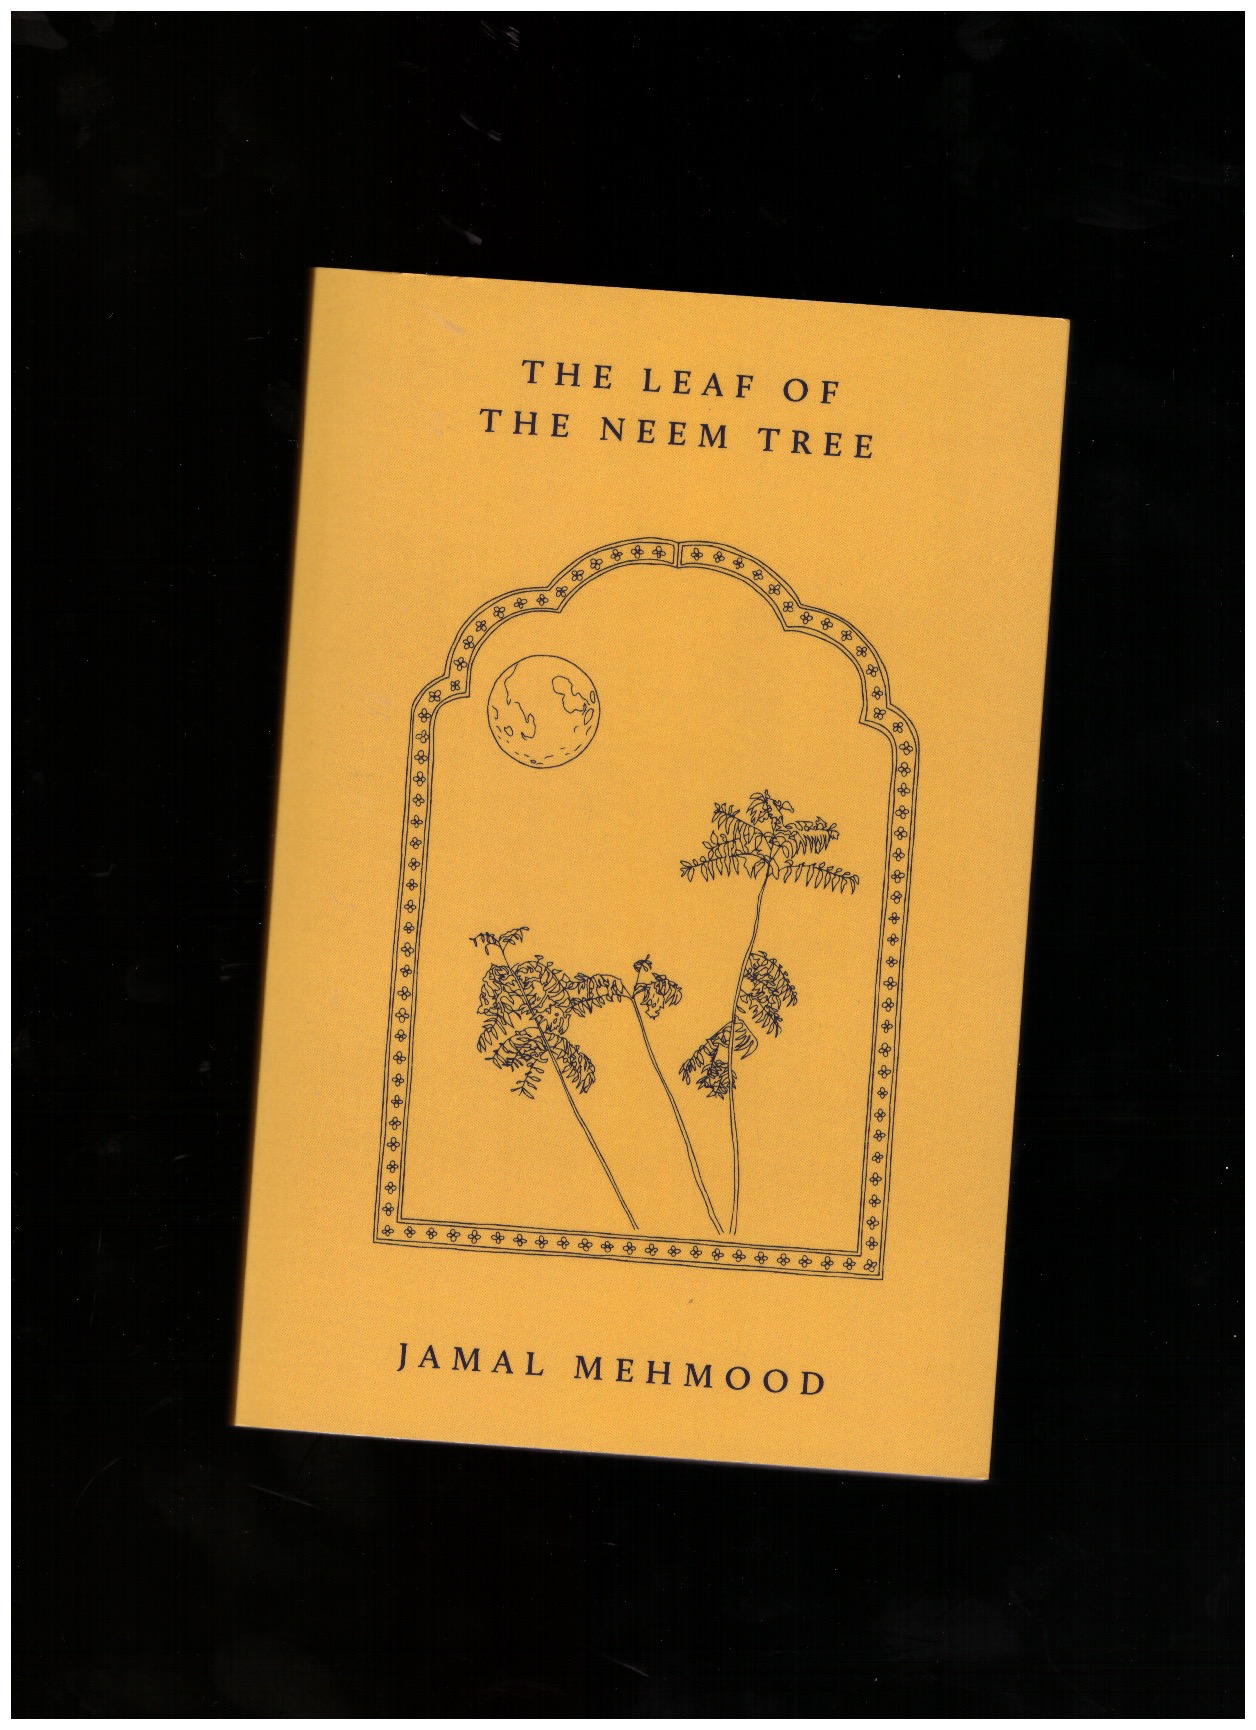 MEHMOOD, Jamal - The Leaf of the Neem Tree